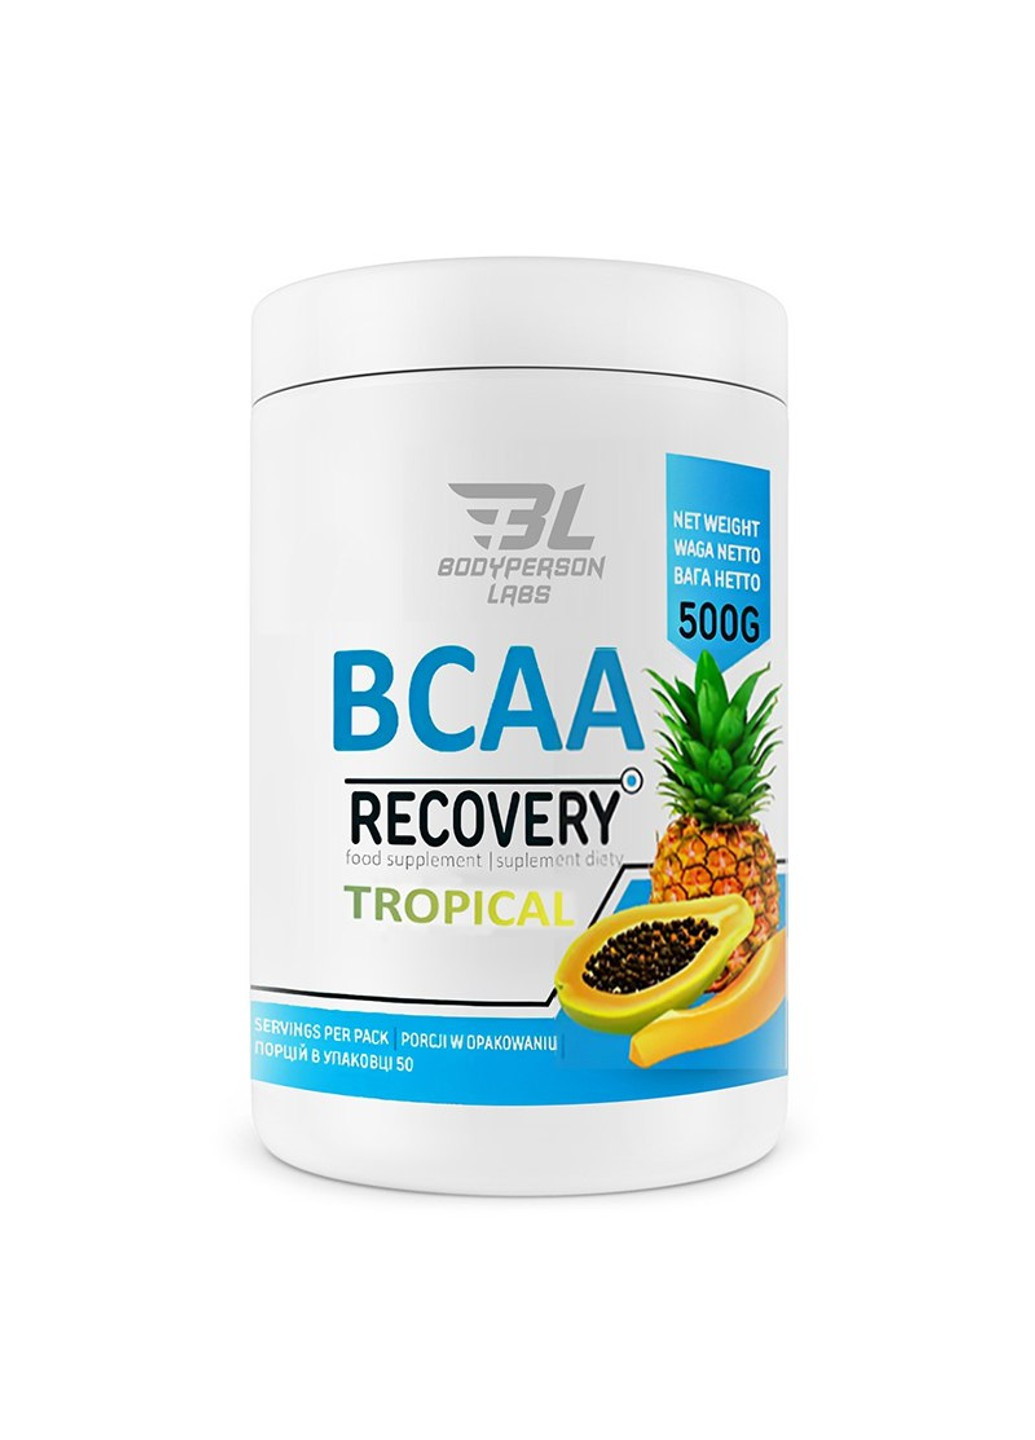 Комплекс Аминокислот ВСАА для Восстановления BCAA Recovery - 500г Bodyperson Labs (269713054)